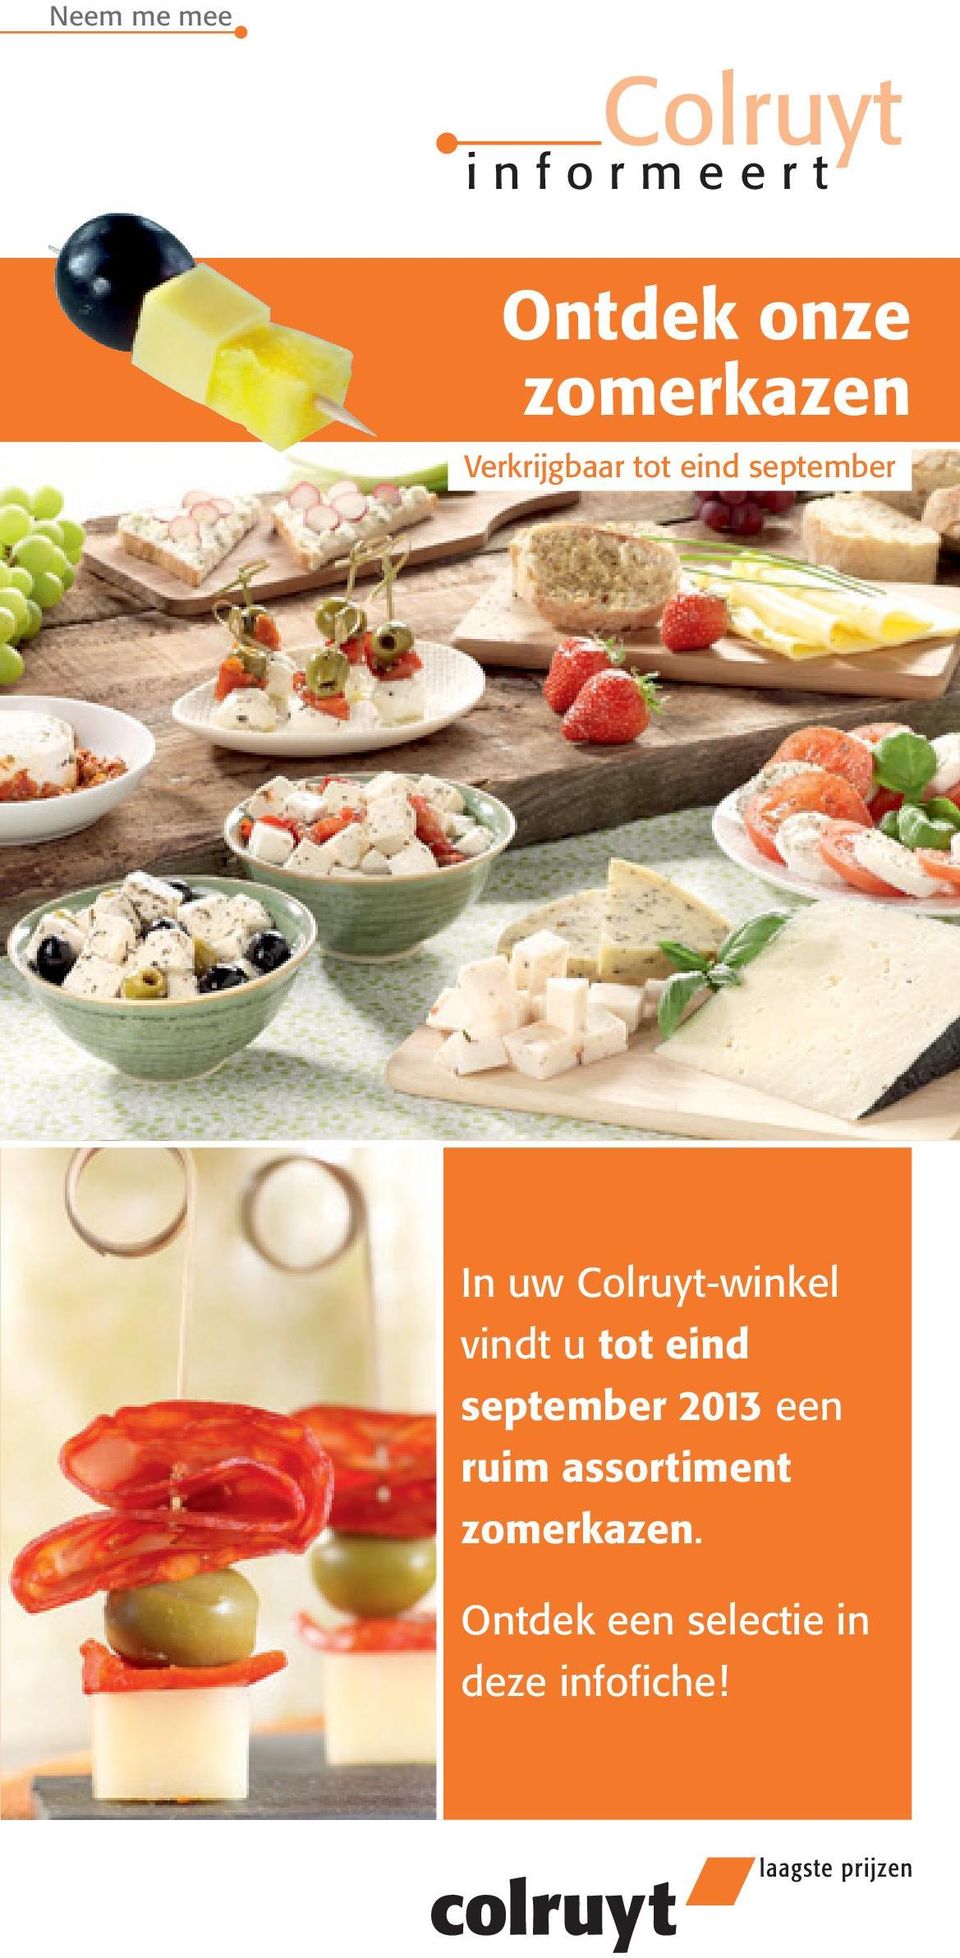 Colruyt-winkel vindt u tot eind september 2013 een